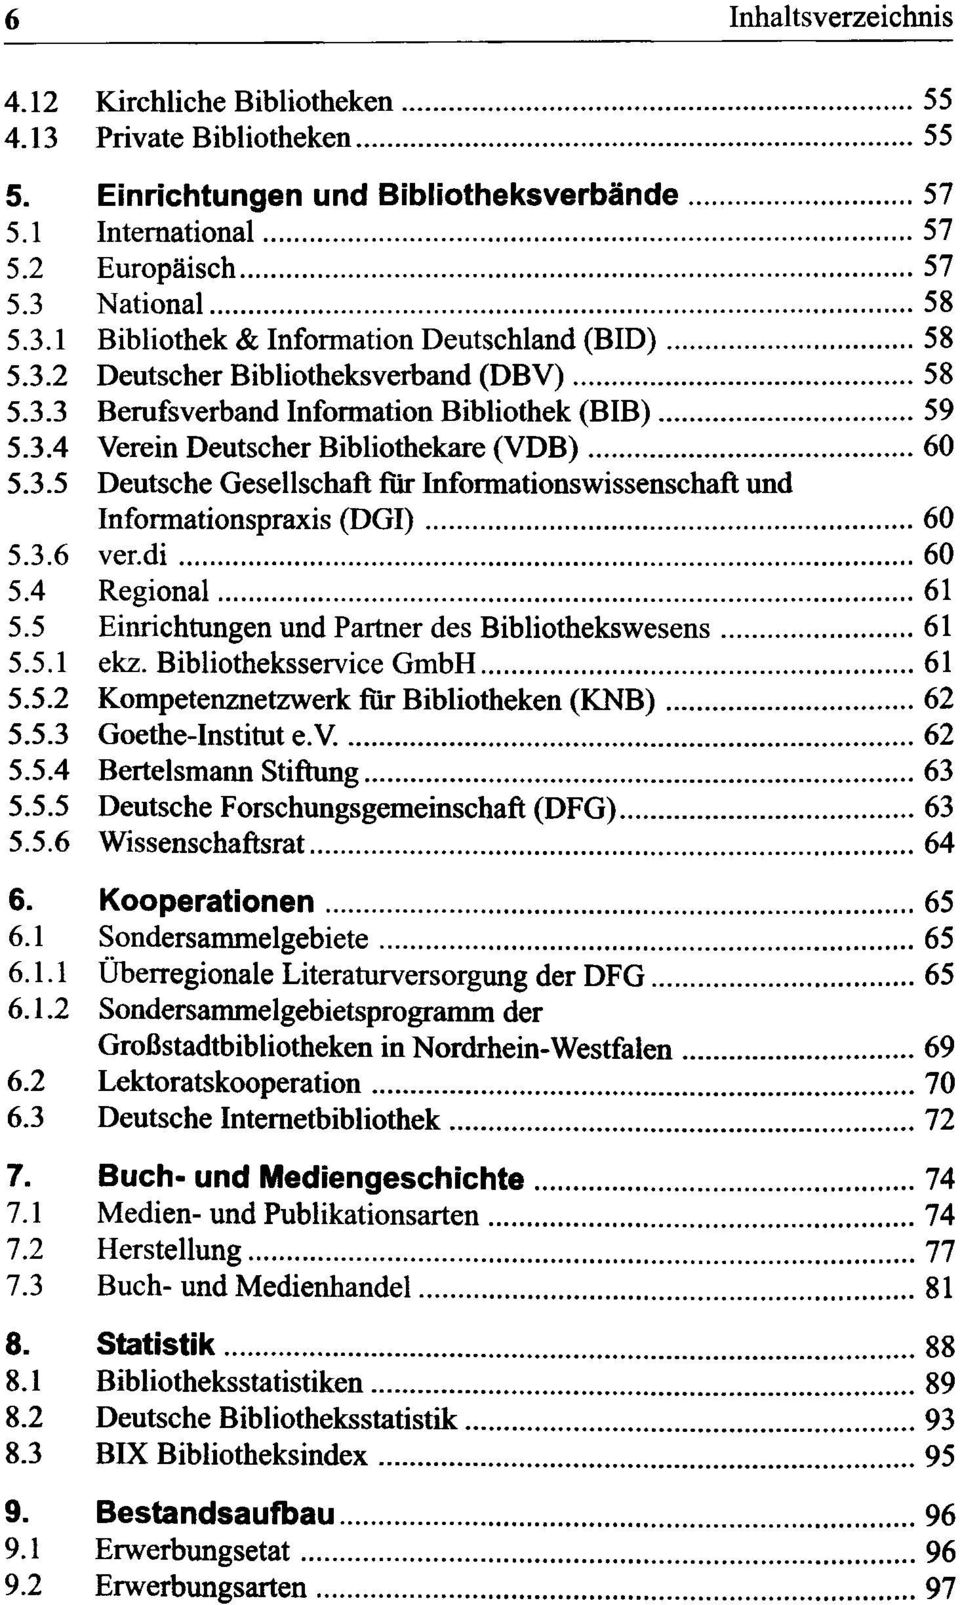 3.6 verdi 60 5.4 Regional 61 5.5 Einrichtungen und Partner des Bibliothekswesens 61 5.5.1 ekz. Bibliotheksservice GmbH 61 5.5.2 Kompetenznetzwerk für Bibliotheken (KNB) 62 5.5.3 Goethe-institut e.v. 62 5.5.4 Bertelsmann Stiftung 63 5.